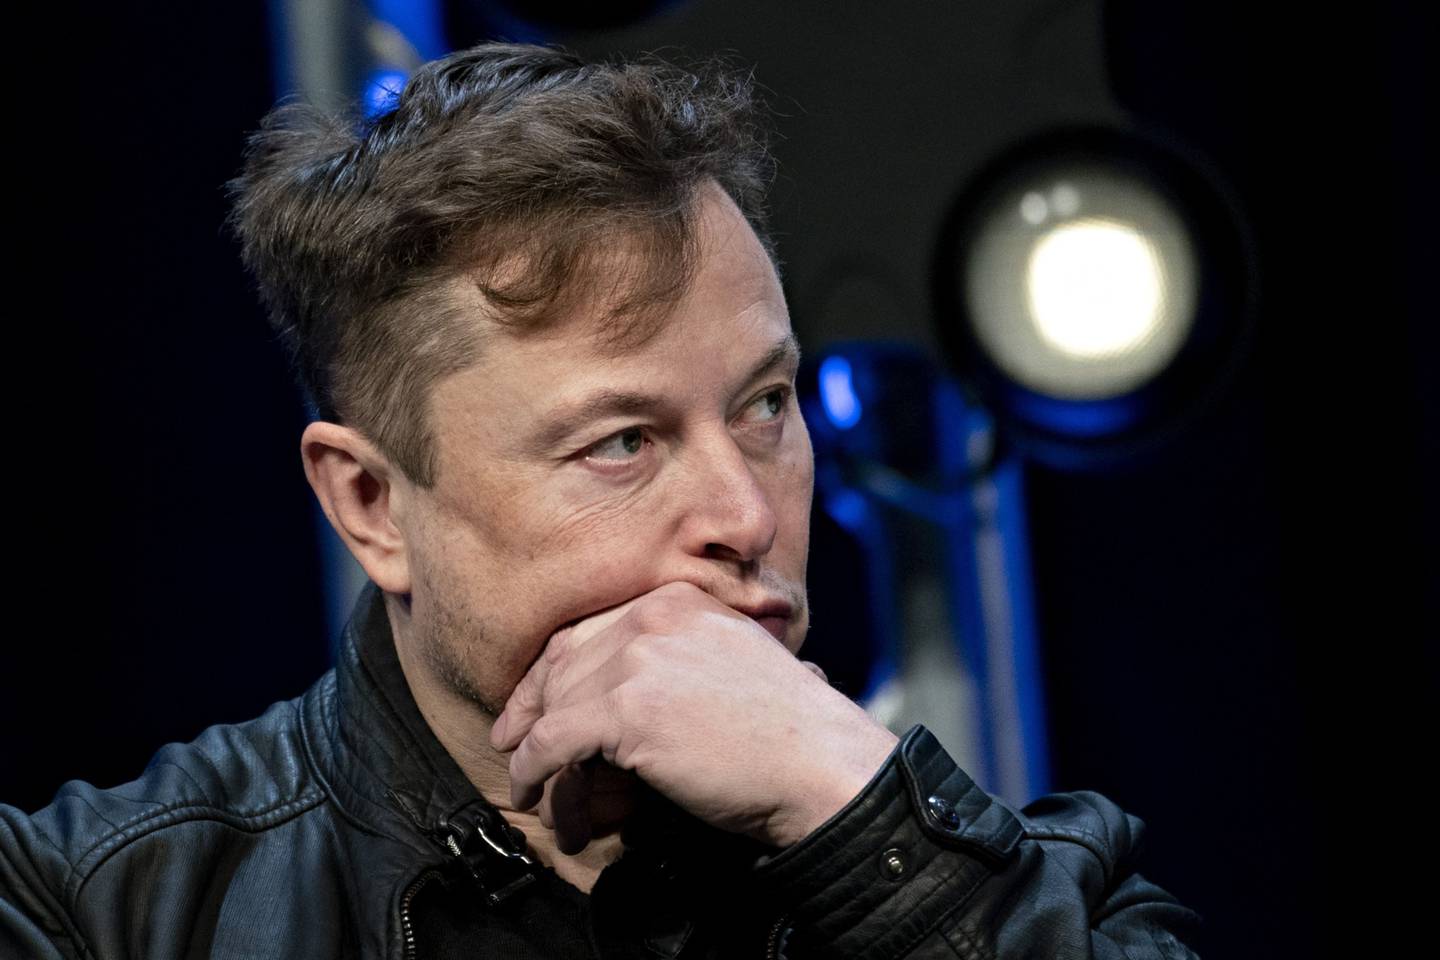 Elon Musk, fundador de SpaceX y director ejecutivo de Tesla Inc., escucha durante una discusión en la Conferencia Satellite 2020 en Washington, DC, EE. UU., El lunes 9 de marzo de 2020.